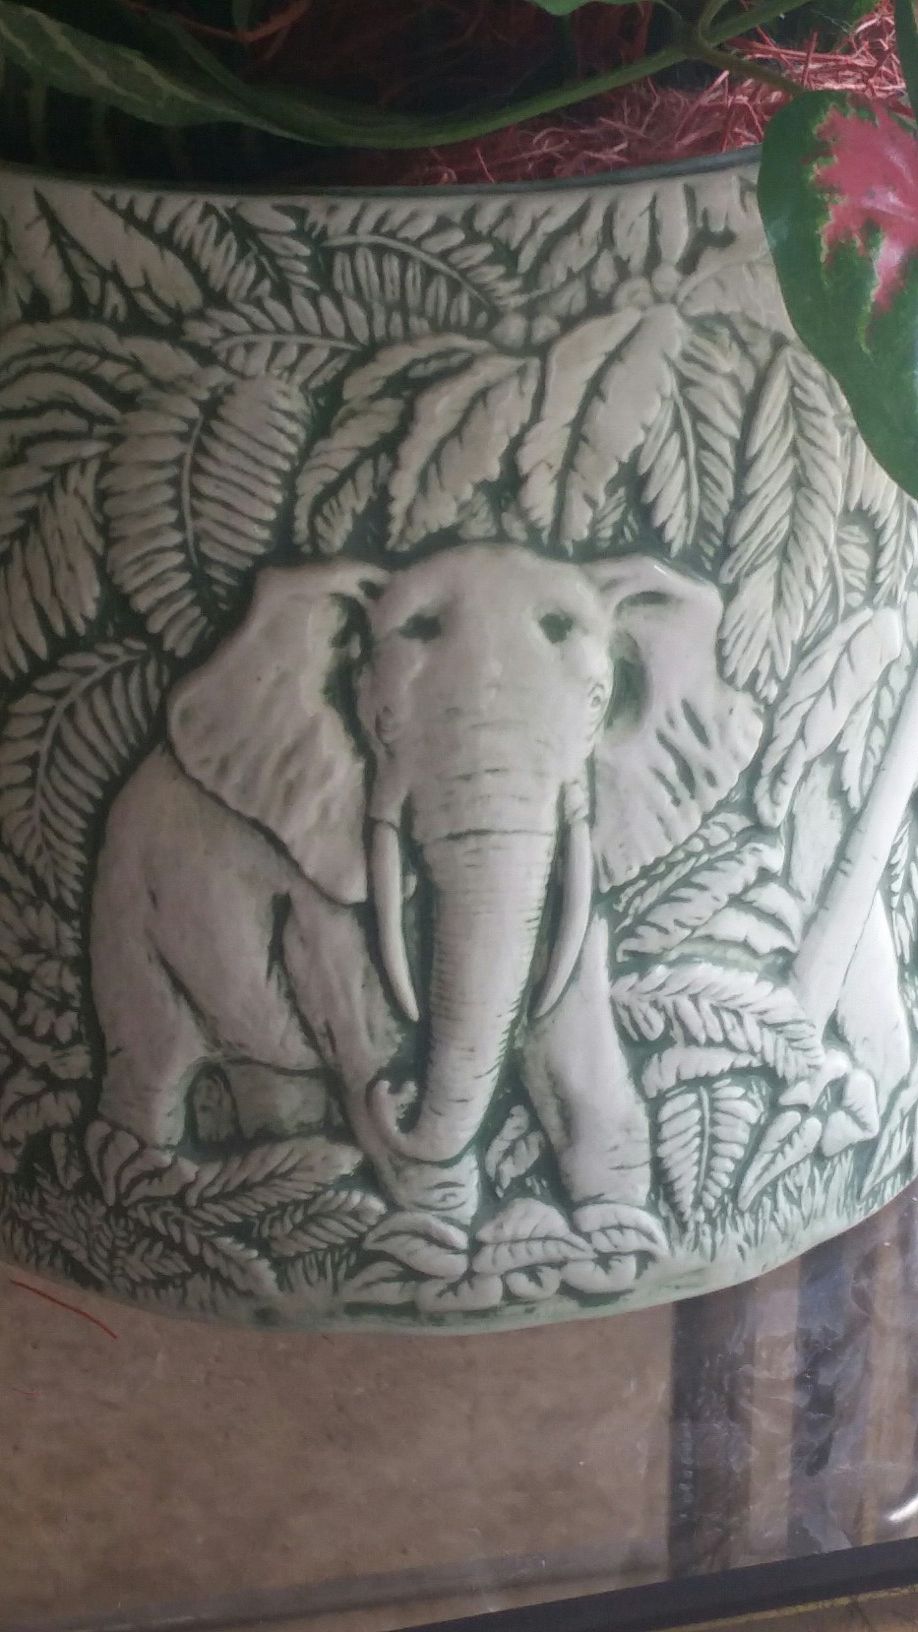 Ceramic elephant design planter